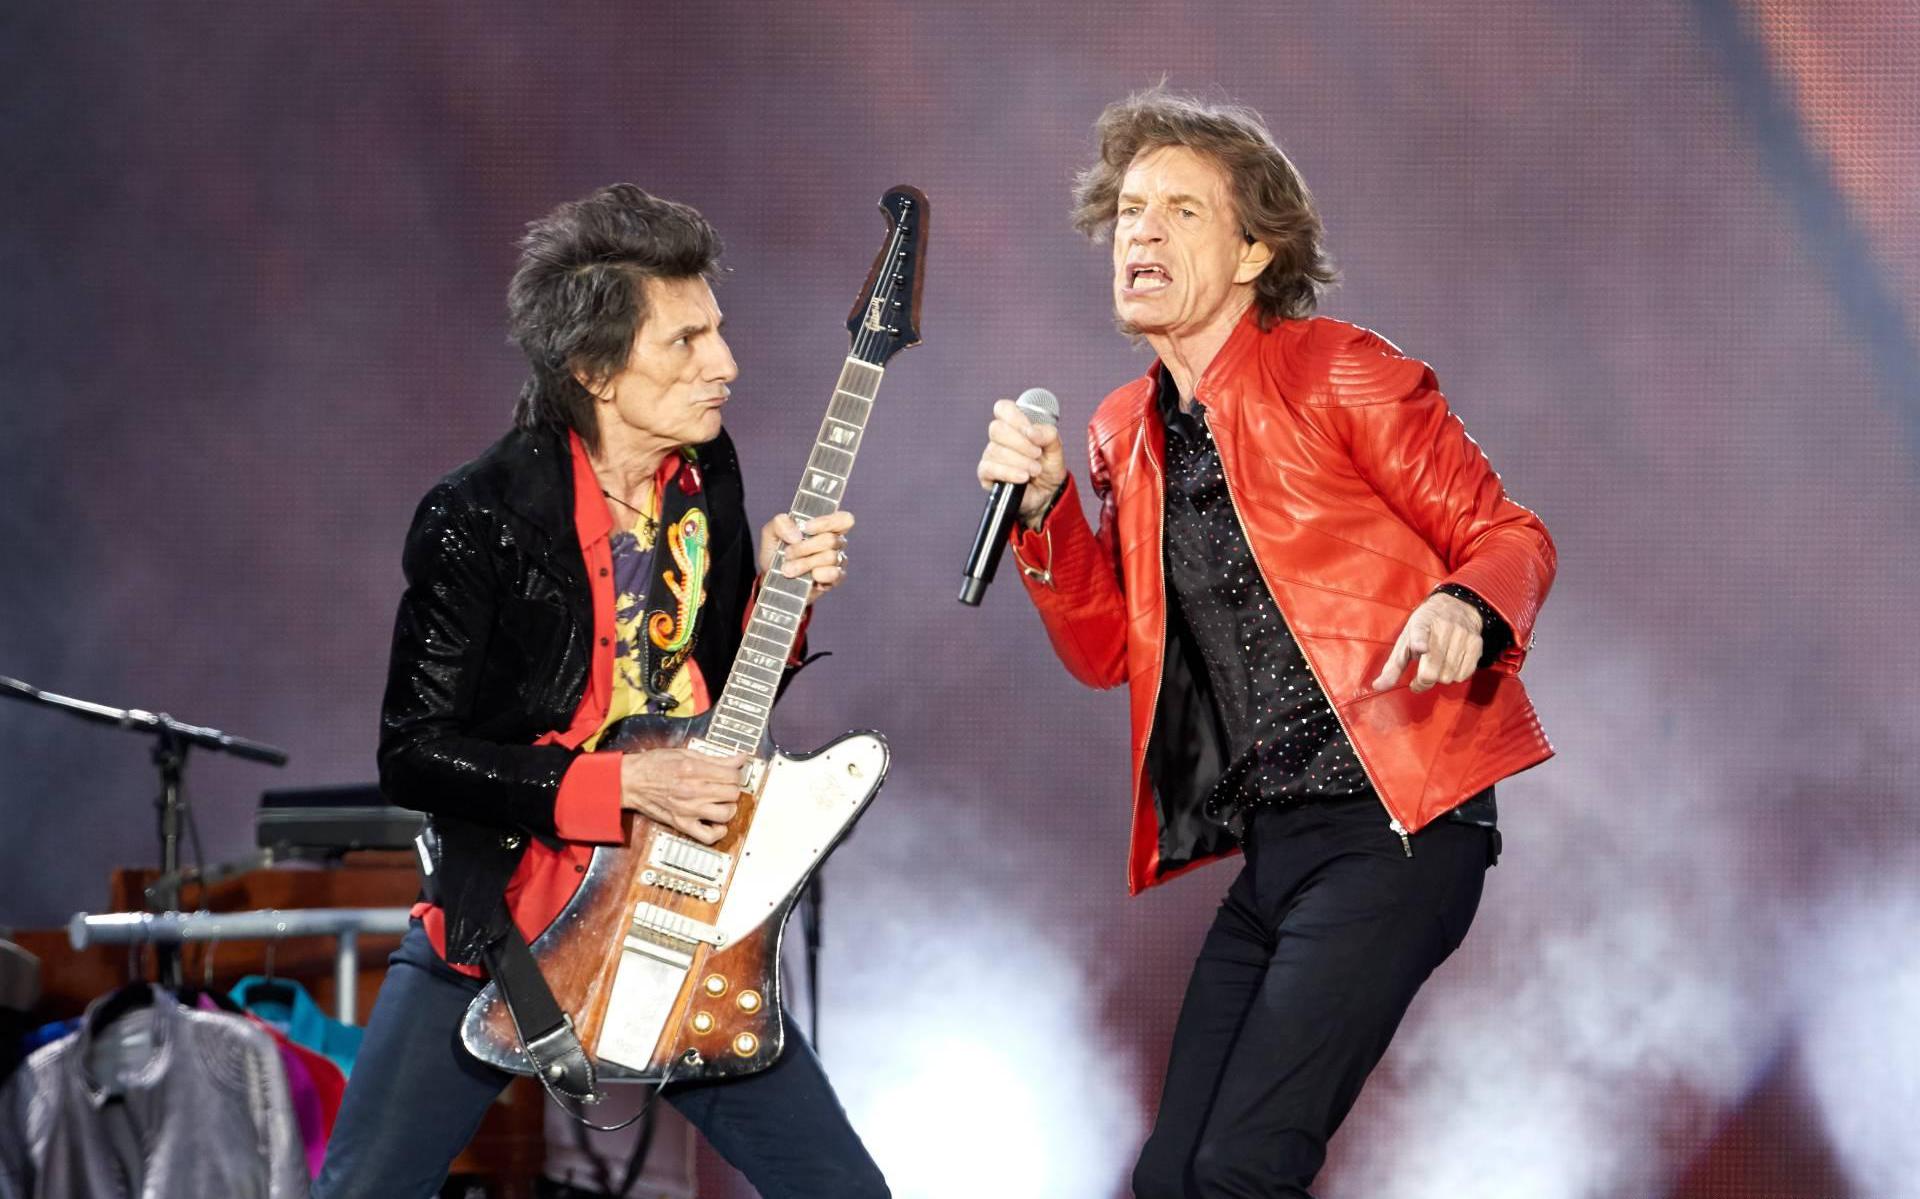 Rolling Stones na vijf jaar weer naar Nederland - Courant